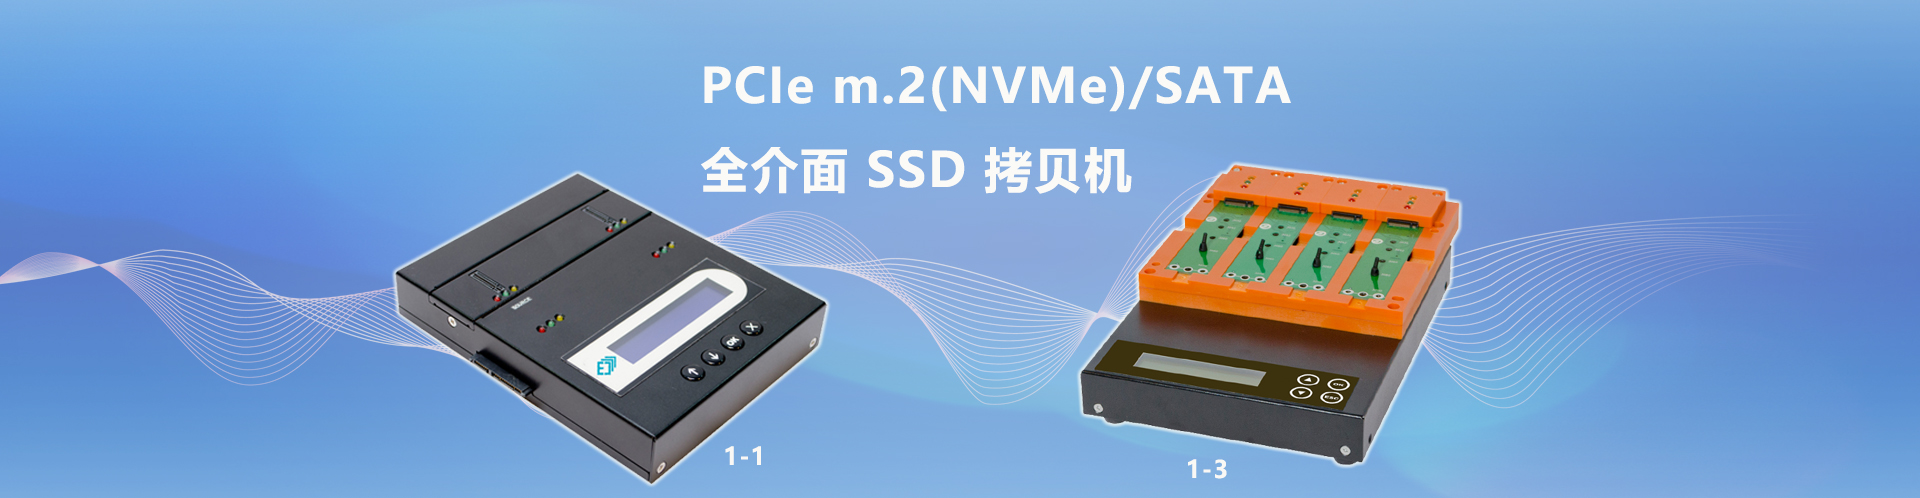 PCIE SSD